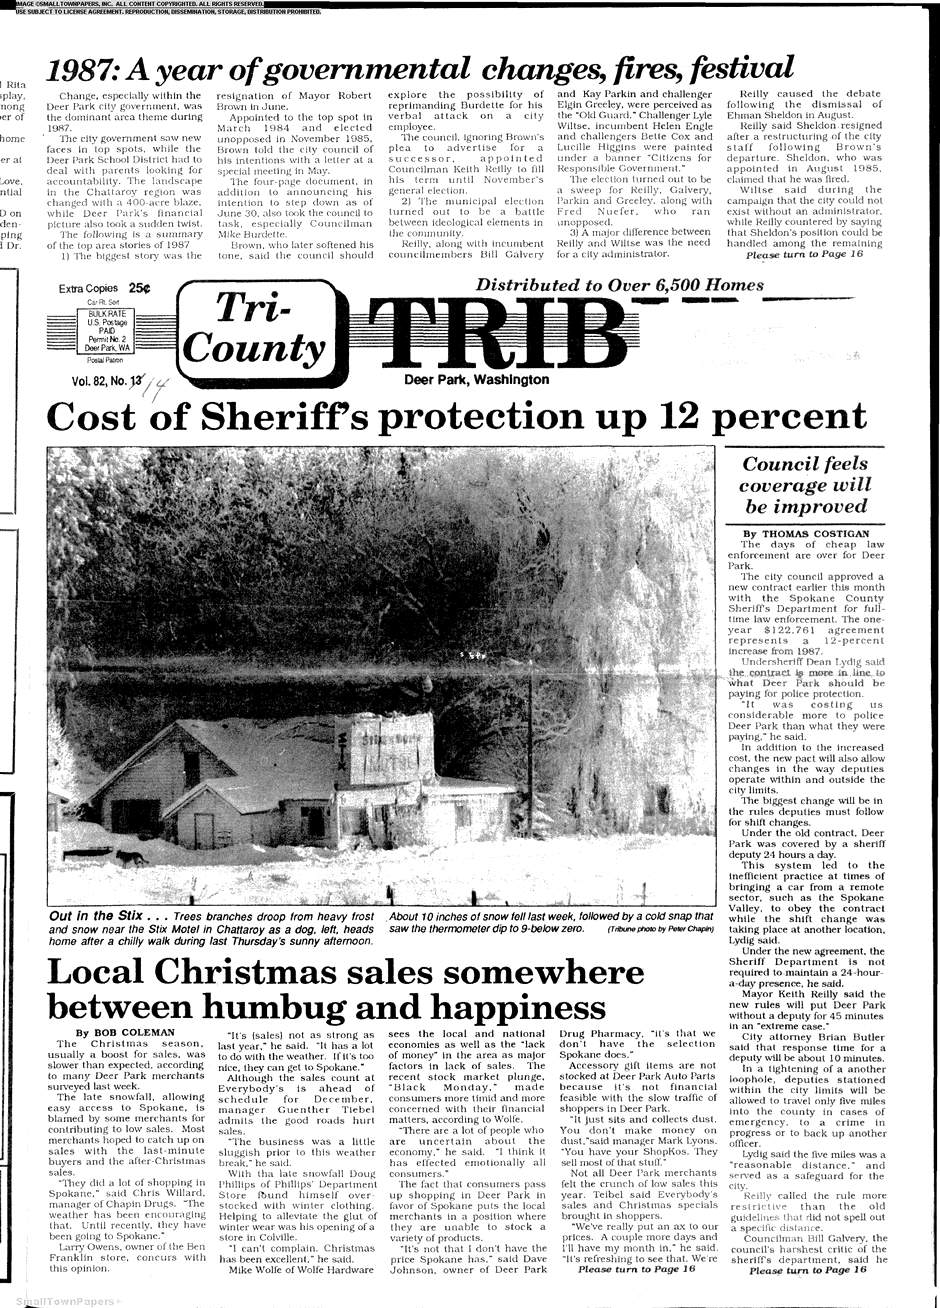 Tri-County Tribune